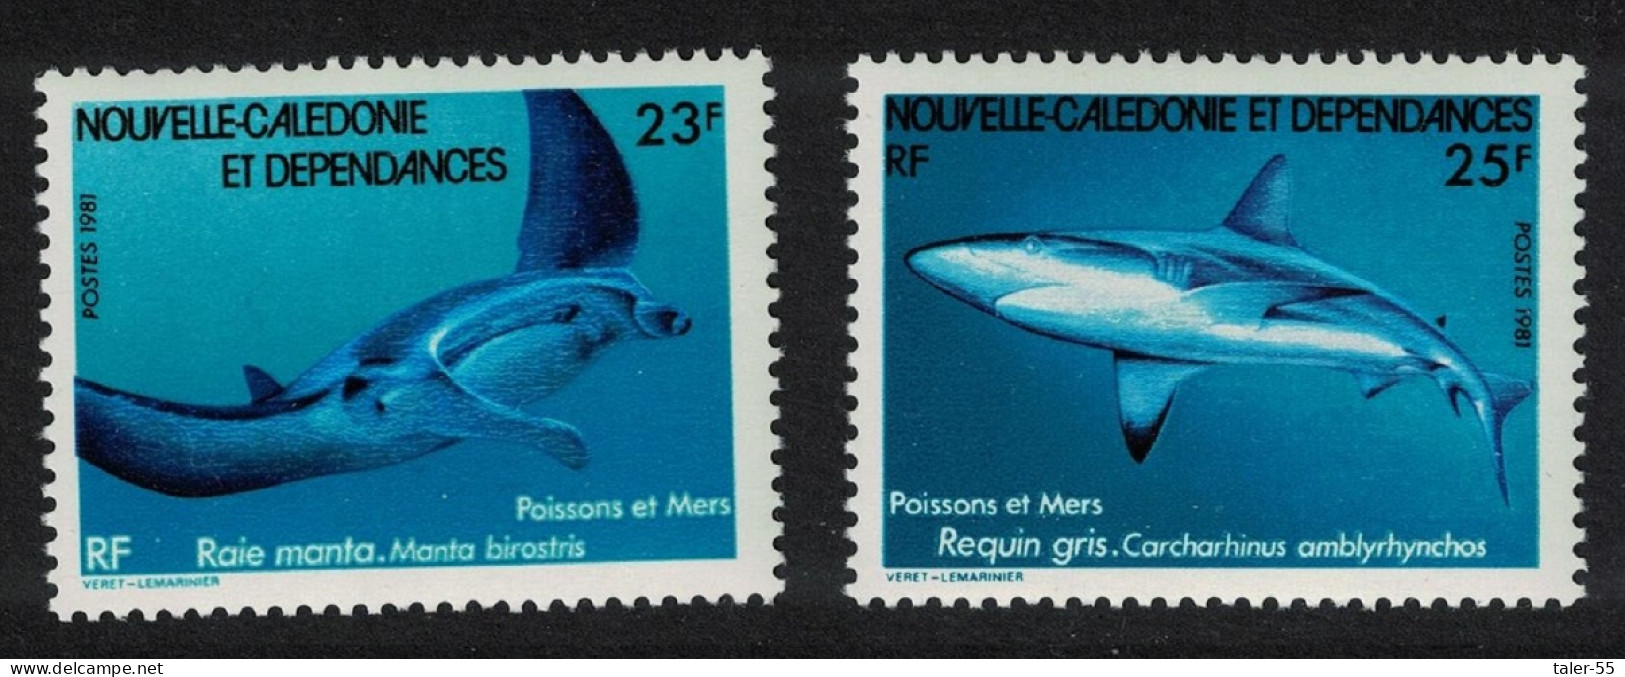 New Caledonia Manta Ray Grey Reef Shark Sea Fish 2v 1981 MNH SG#647-648 - Unused Stamps